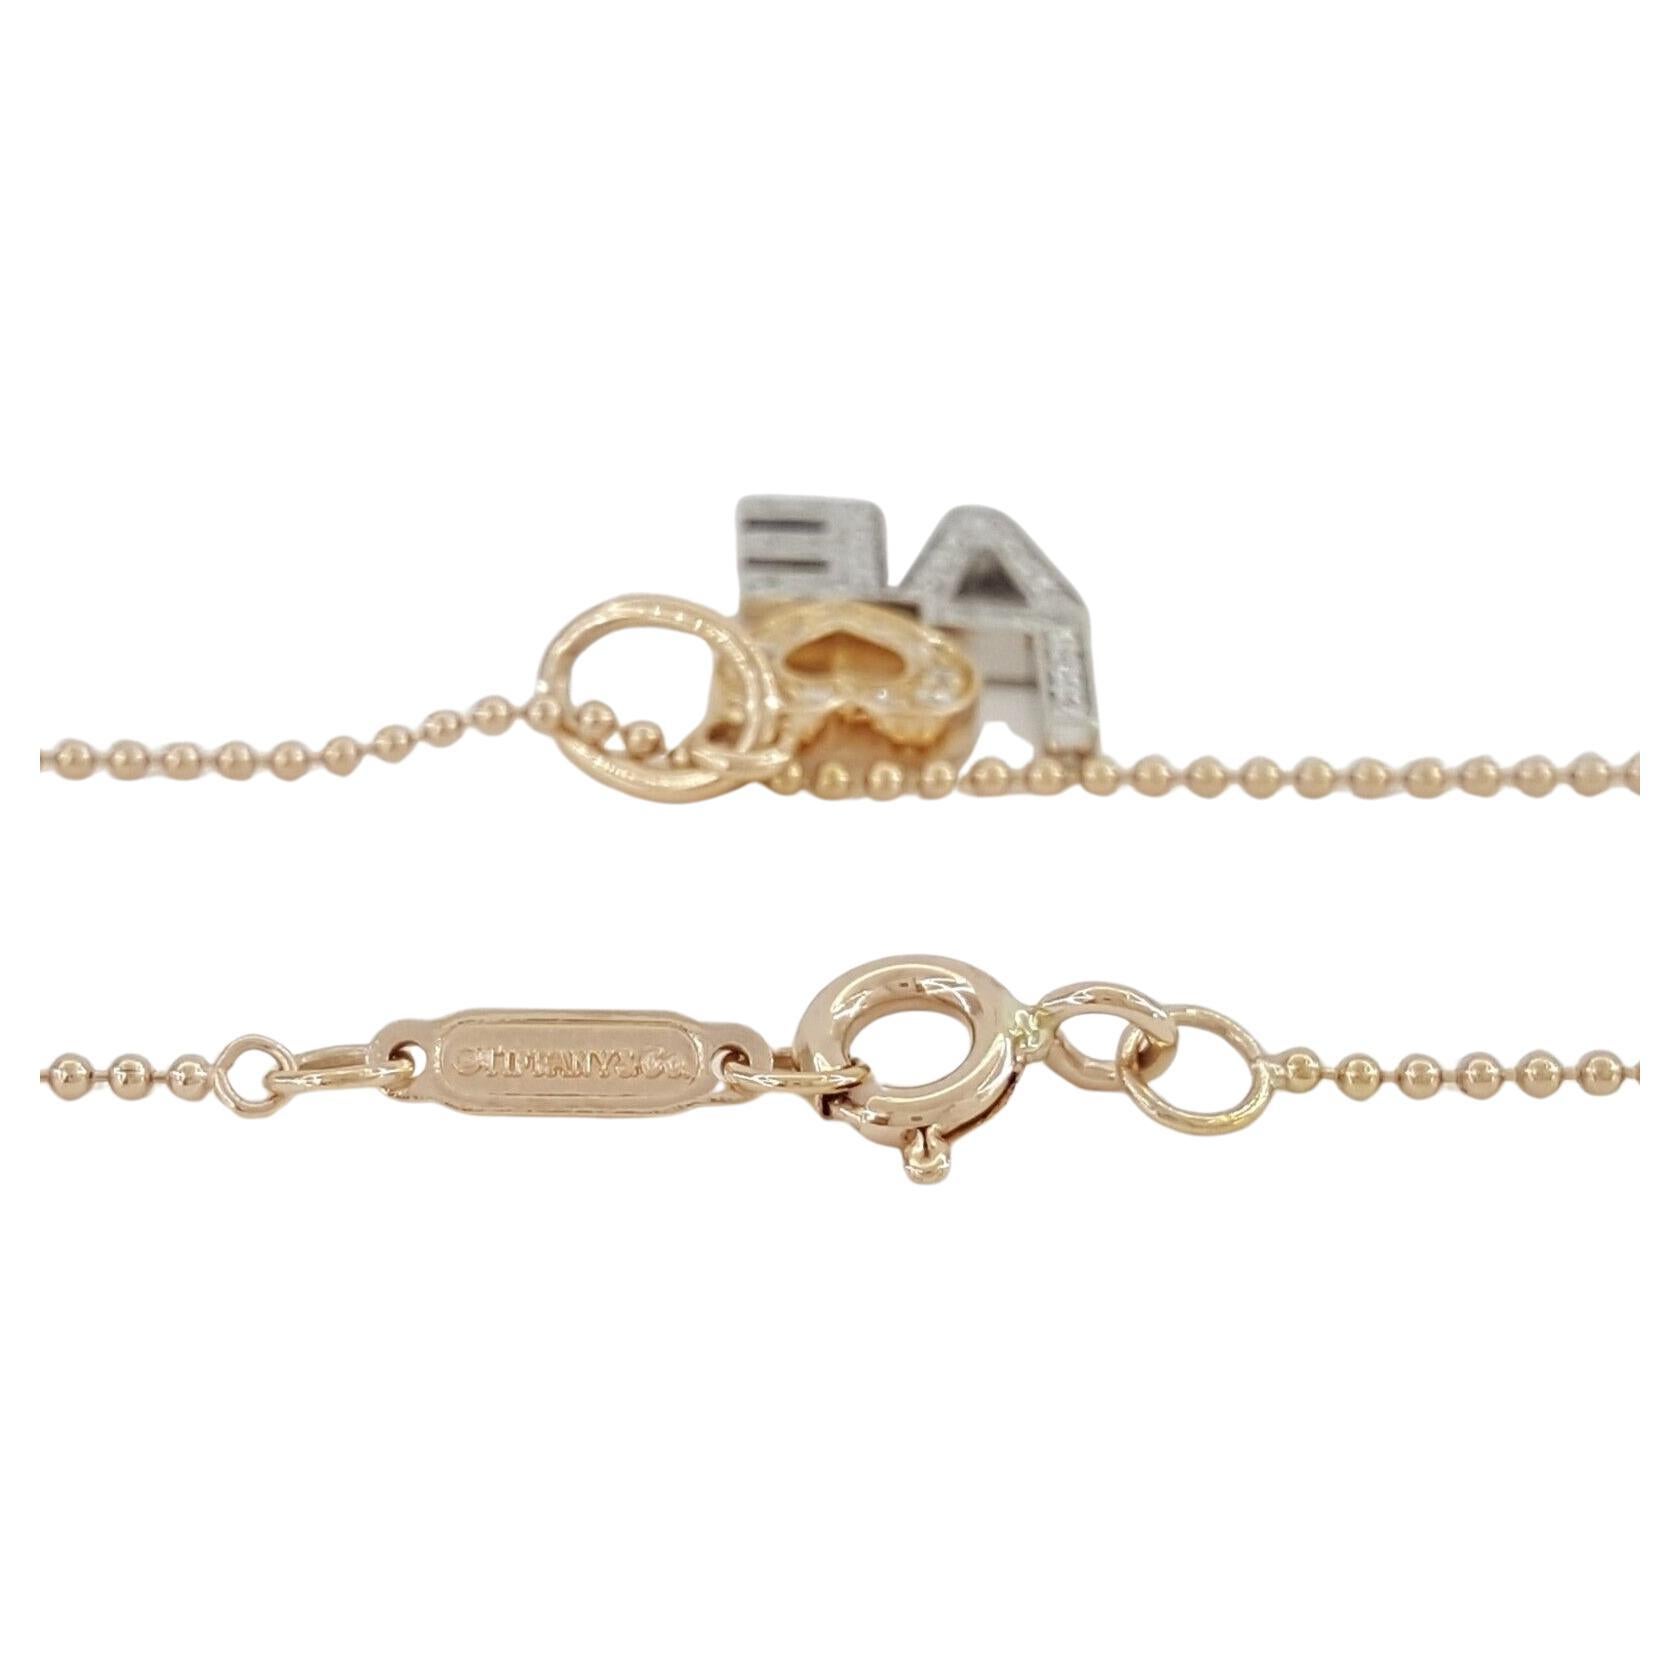 Tiffany & Co. Pendentif/collier Love présentant un poids total de diamants de 0,12 carats avec des diamants de taille ronde. Fabriqués en or rose et blanc 18 carats massif, la chaîne et le pendentif pèsent ensemble 3,5 grammes. Le pendentif mesure